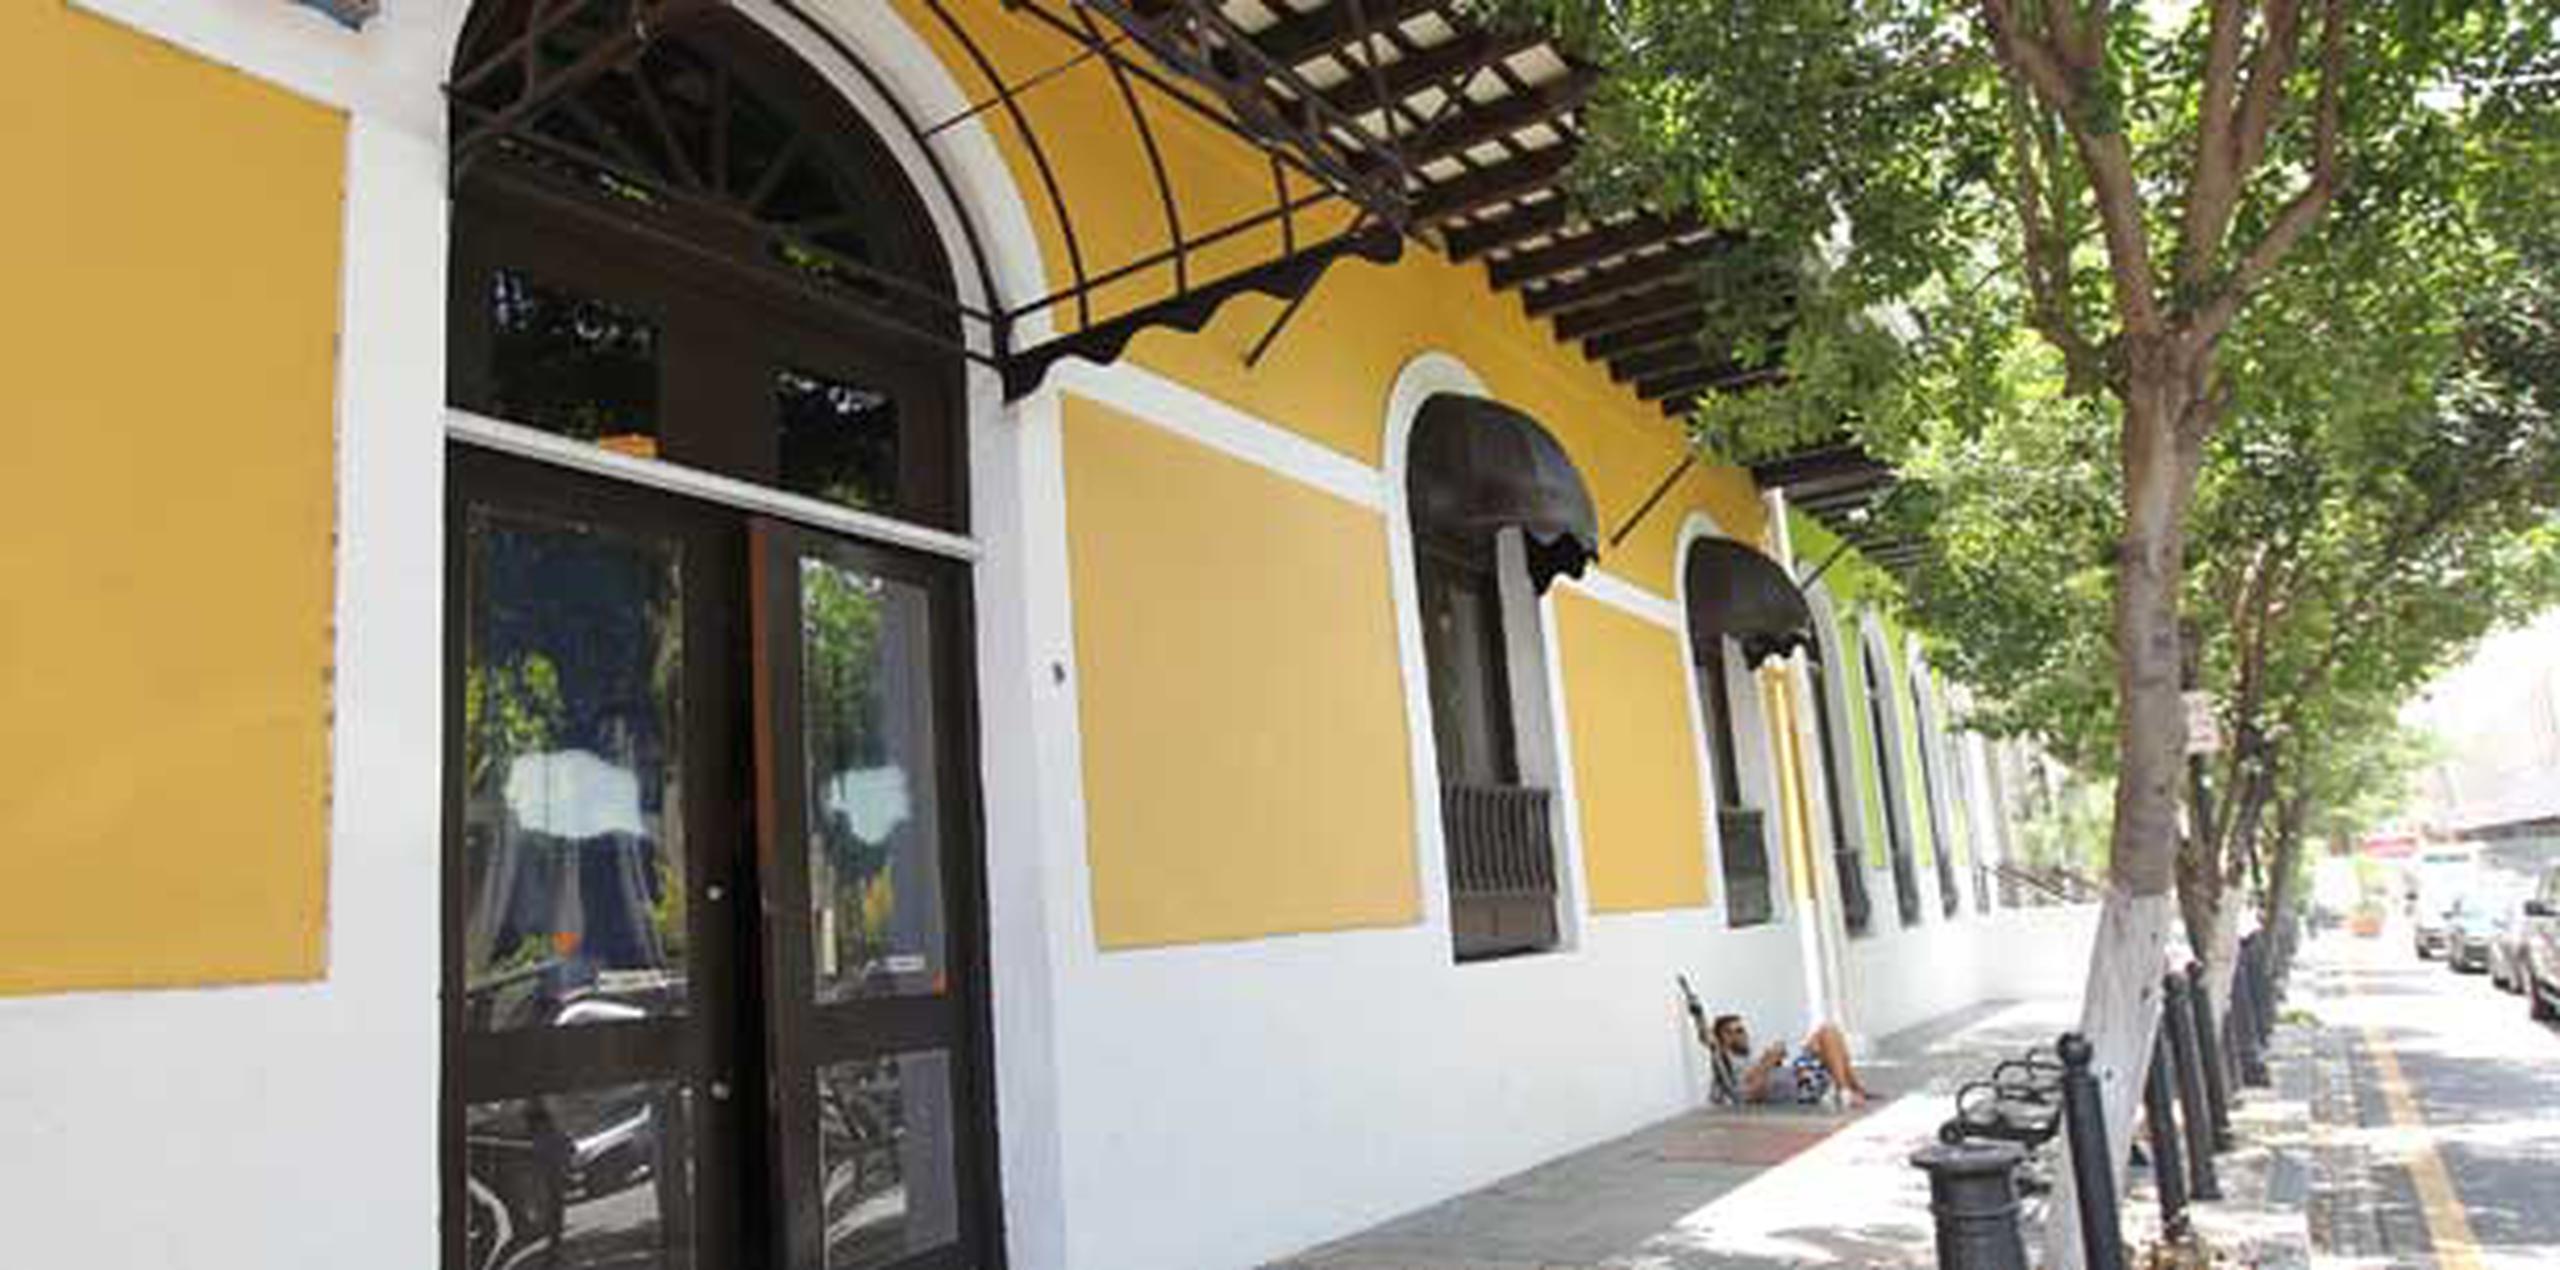 El restaurante Vaca brava ocupa el local que pertenecía al Hard Rock café en Viejo San Juan. (Archivo)